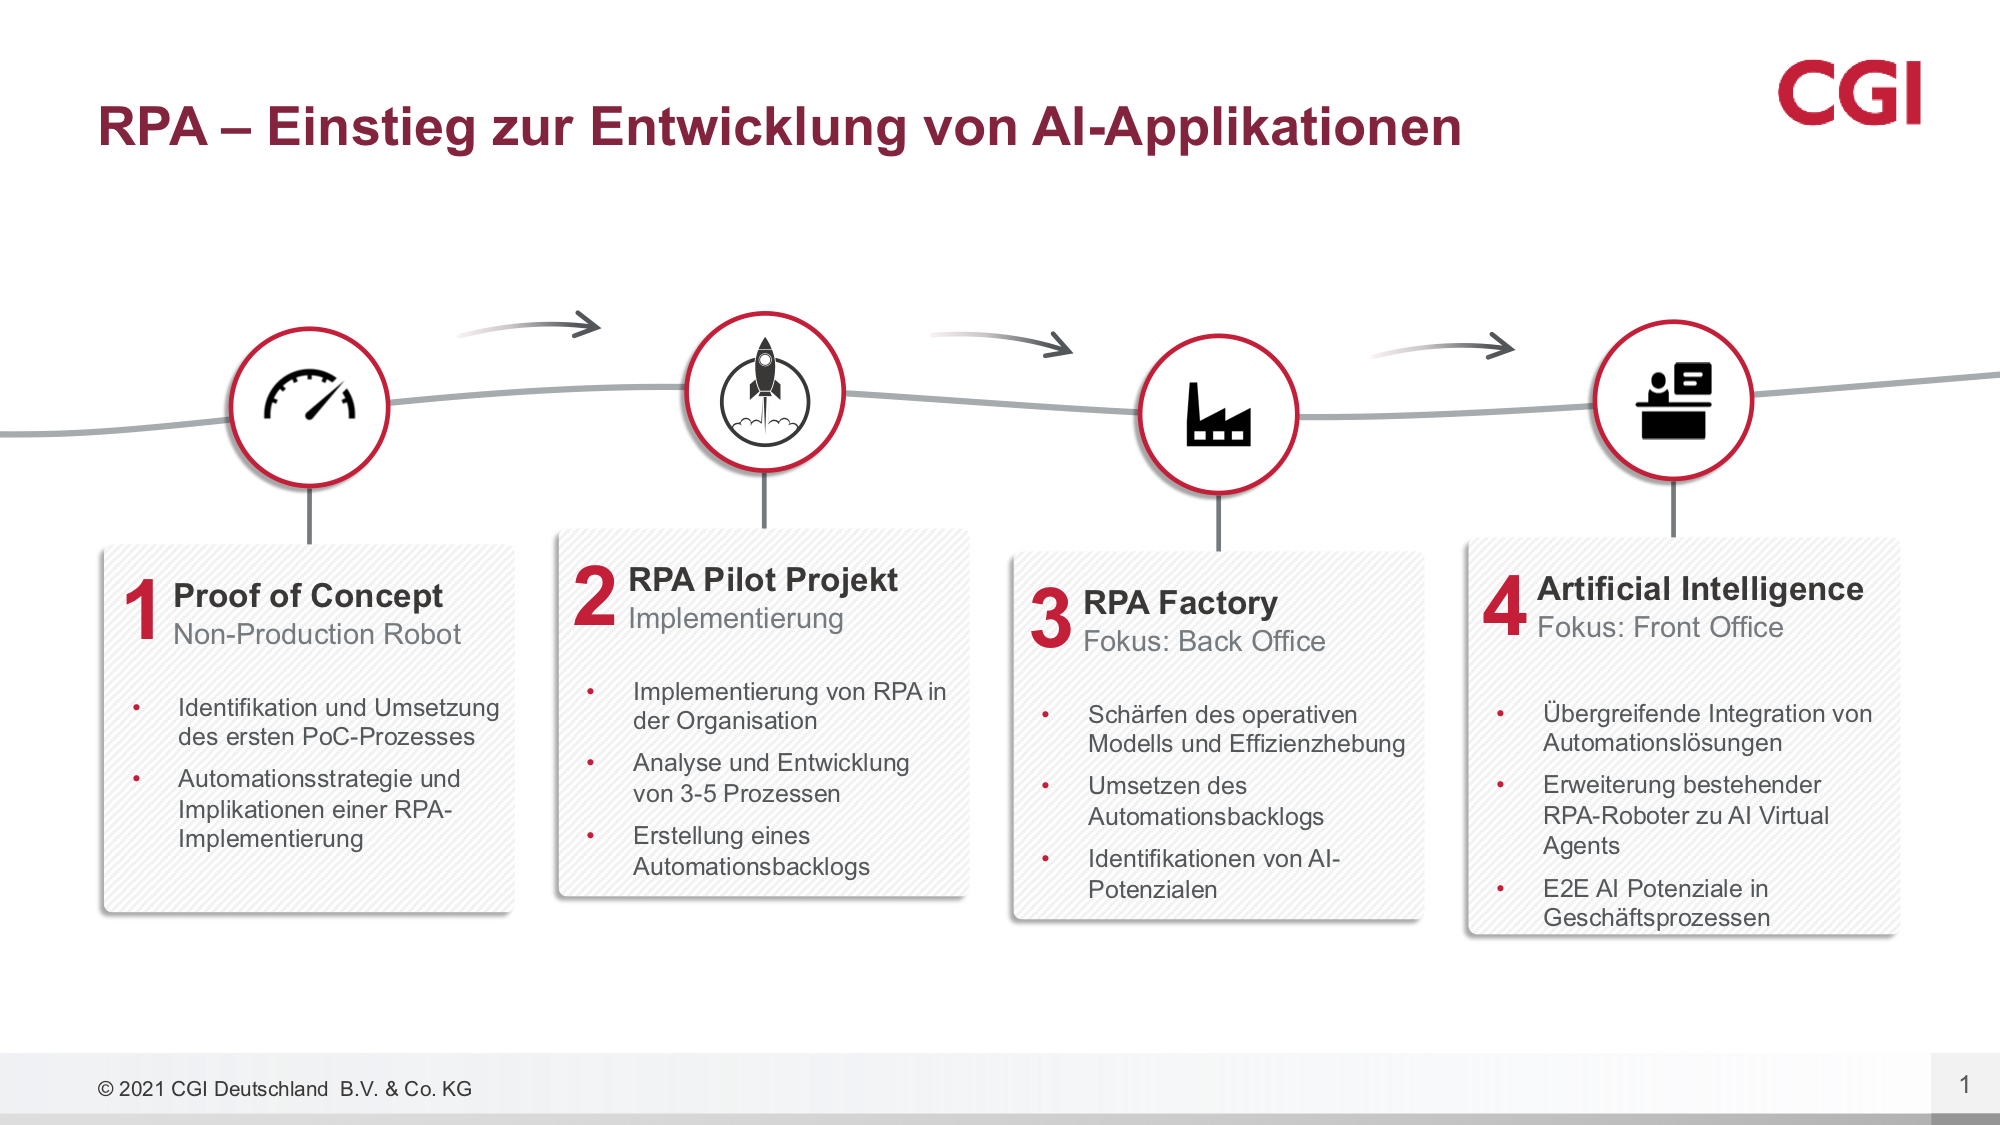 Der Ansatz von CGI begleitet Unternehmen von der Automation einfacher Anwendungsfälle bis zur Entwicklung von KI-Applikationen. (Bild: CGI Deutschland B.V. & Co. KG)